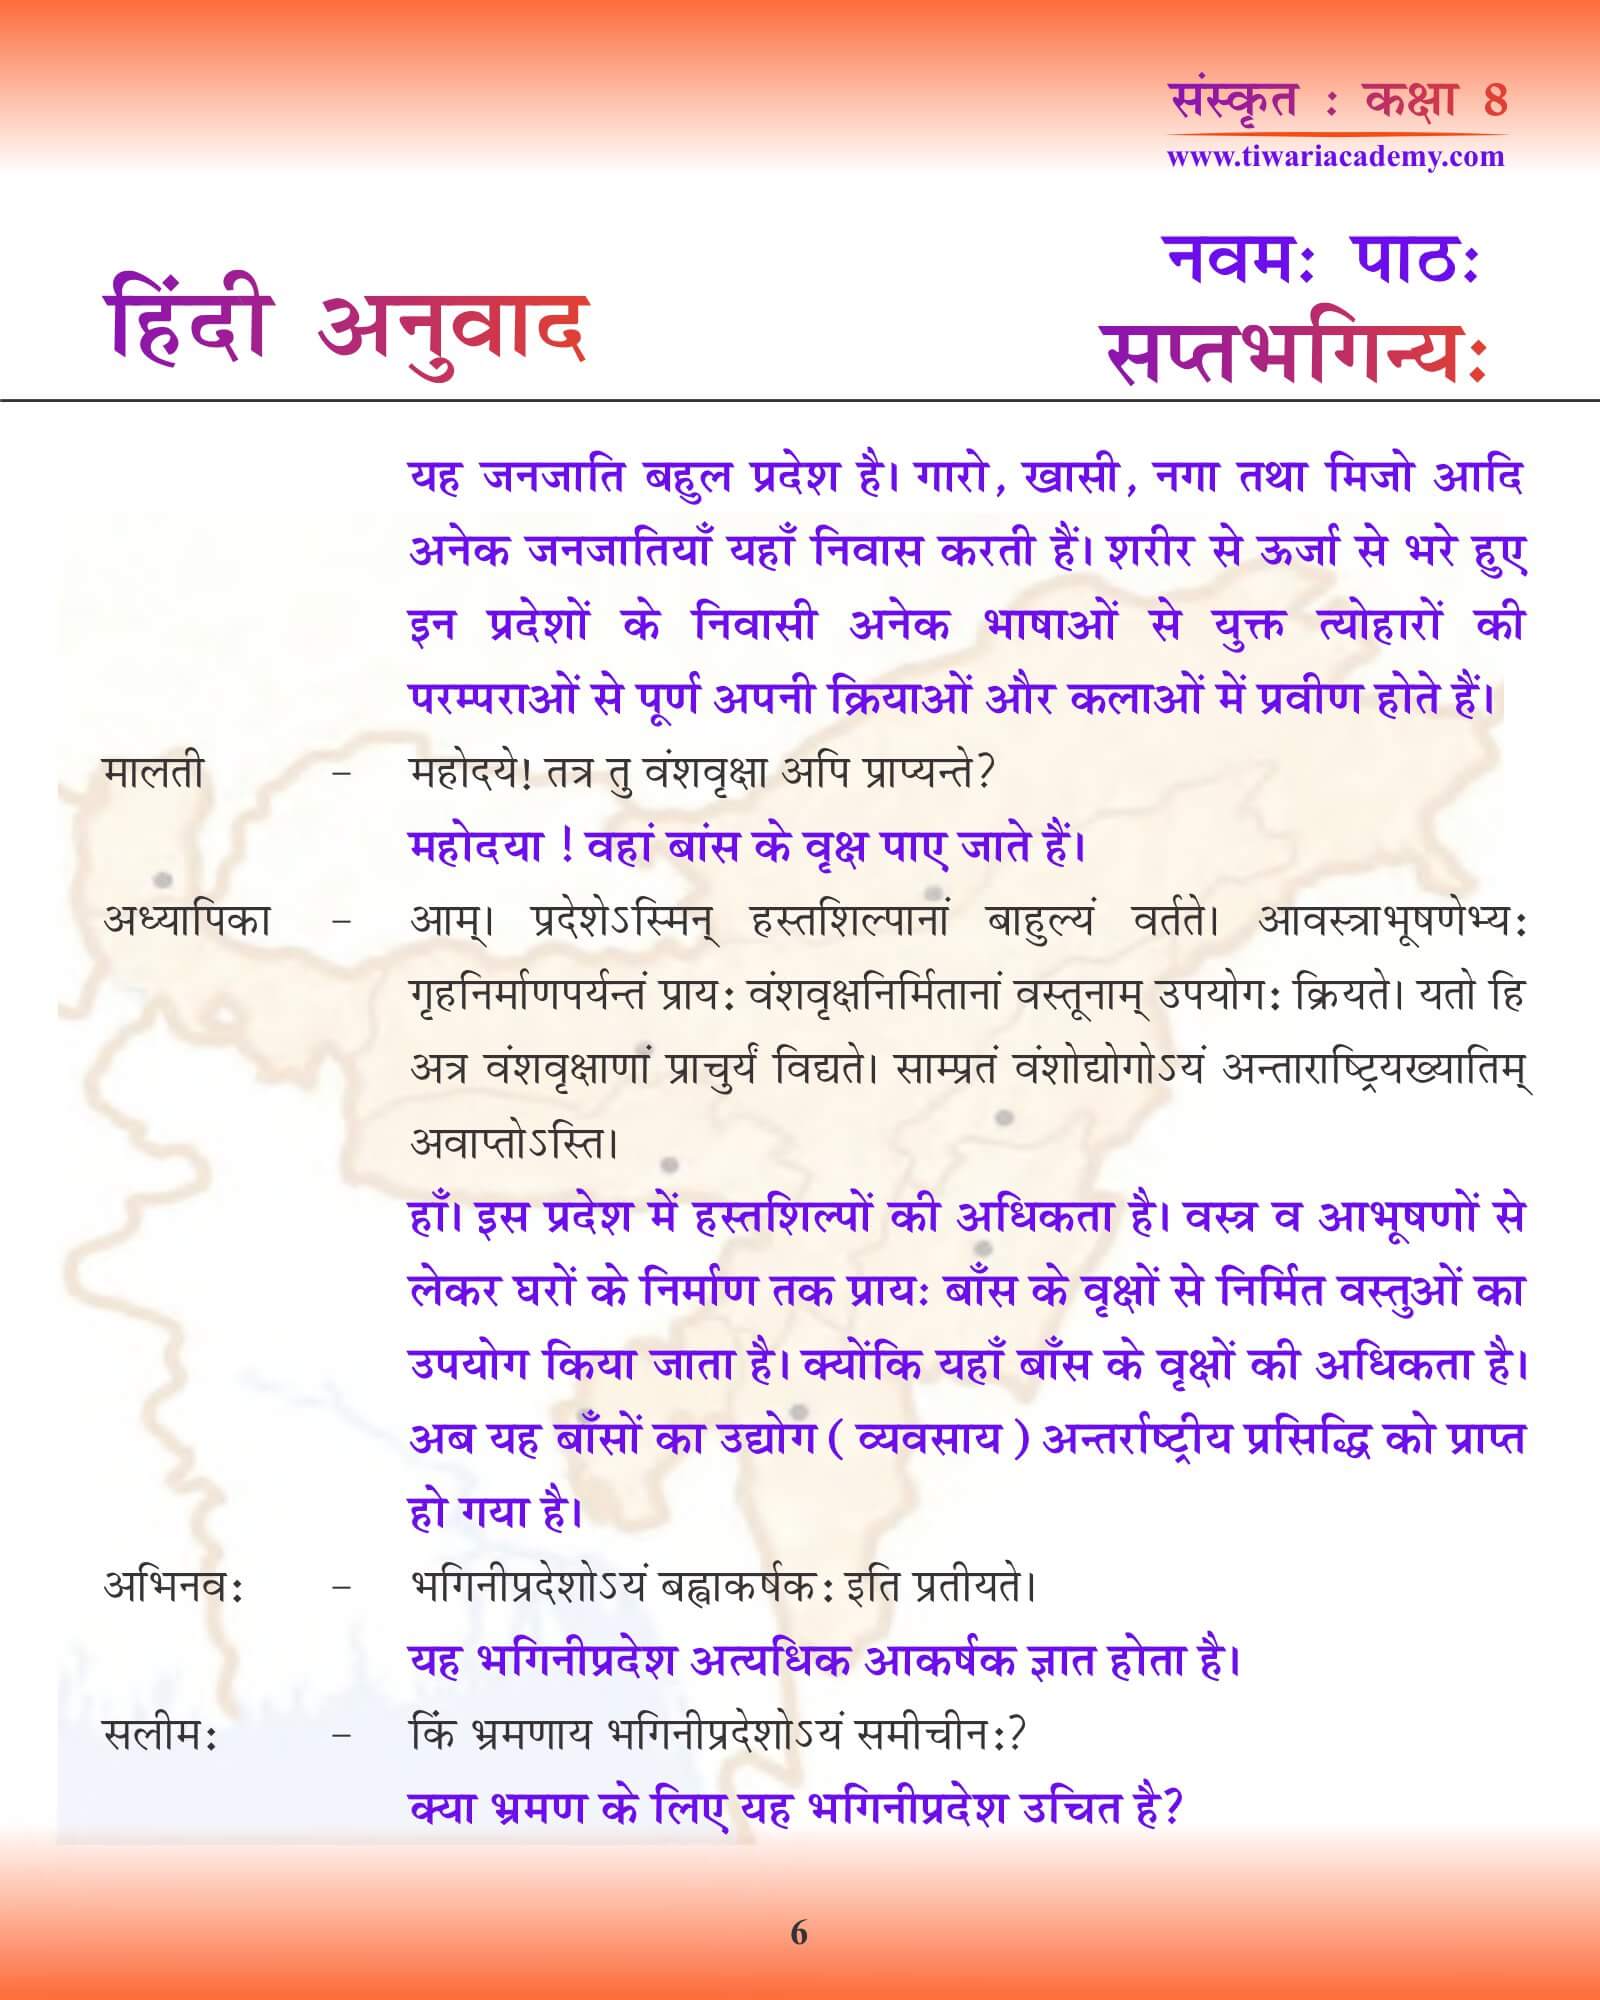 कक्षा 8 संस्कृत अध्याय 9 हिंदी ट्रांसलेशन